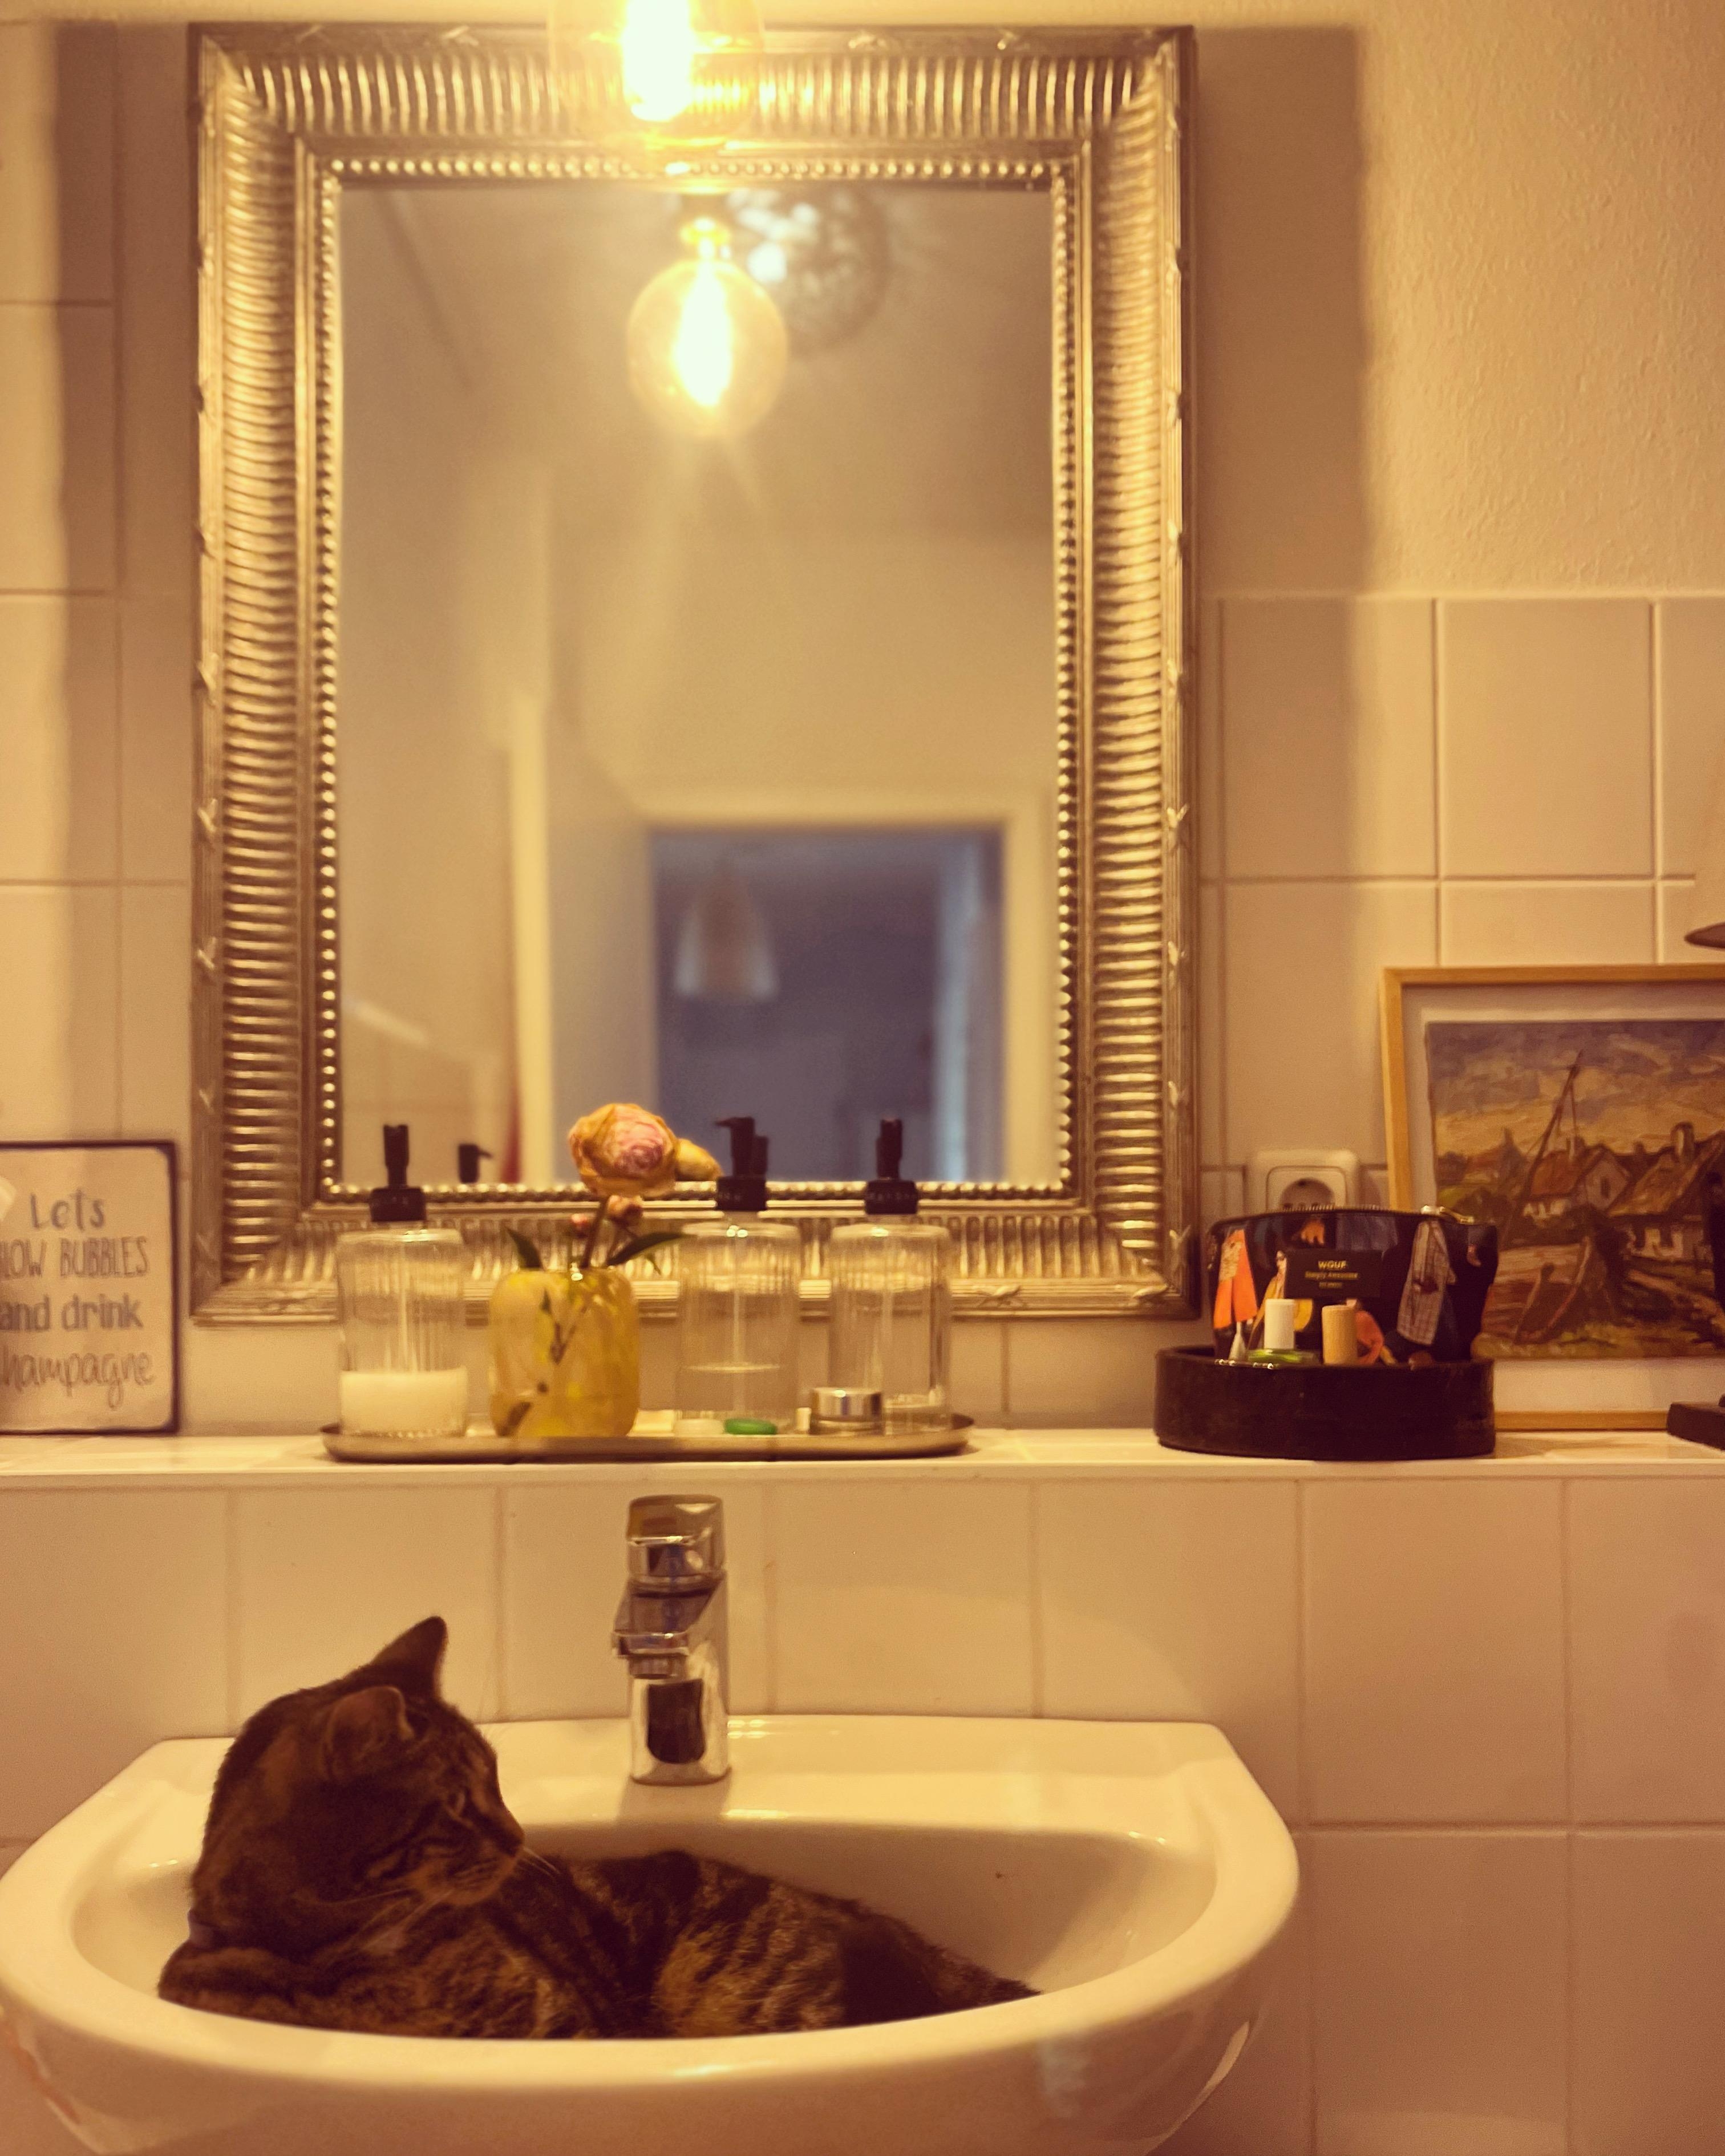 Sommer ist... wenn Katze nur noch im Waschbecken liegt #badezimmer #katze #deko #sommervibe